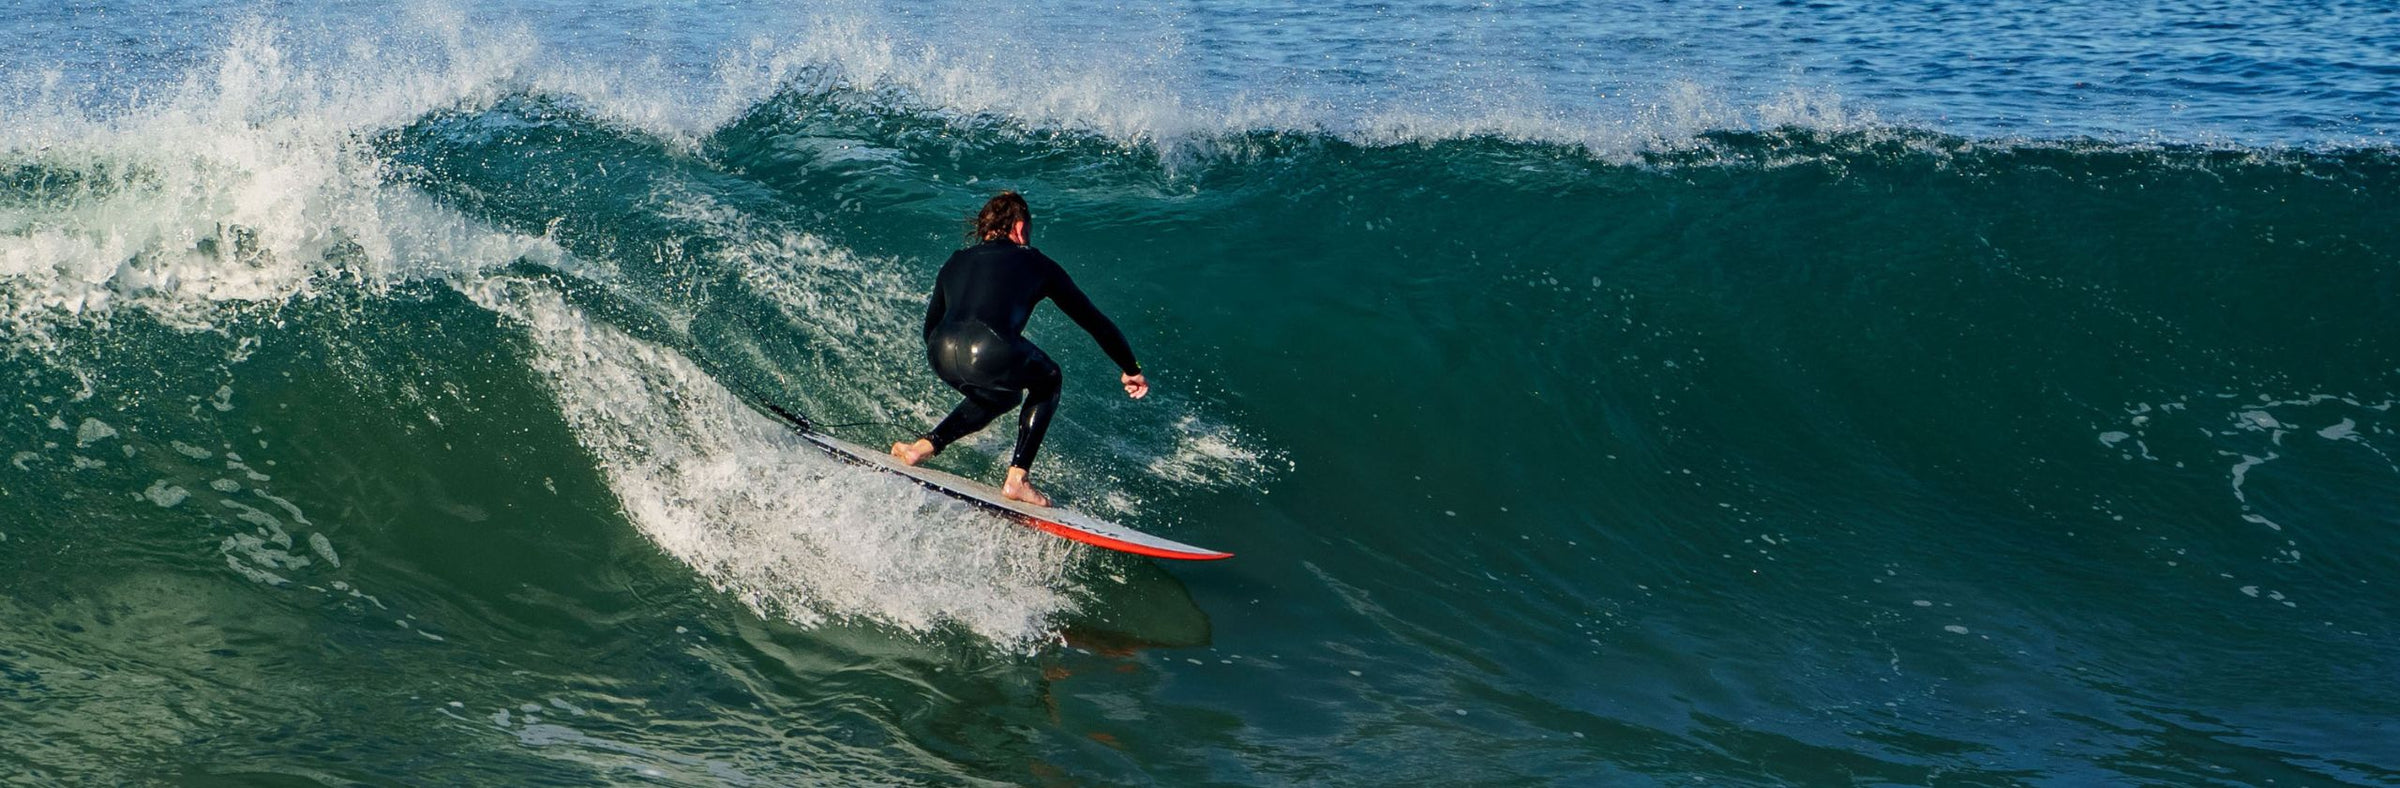 Planche de surf Wyve - Planche de surf Made in France - Planche de surf écologique - Planche de surf imprimée en 3D 